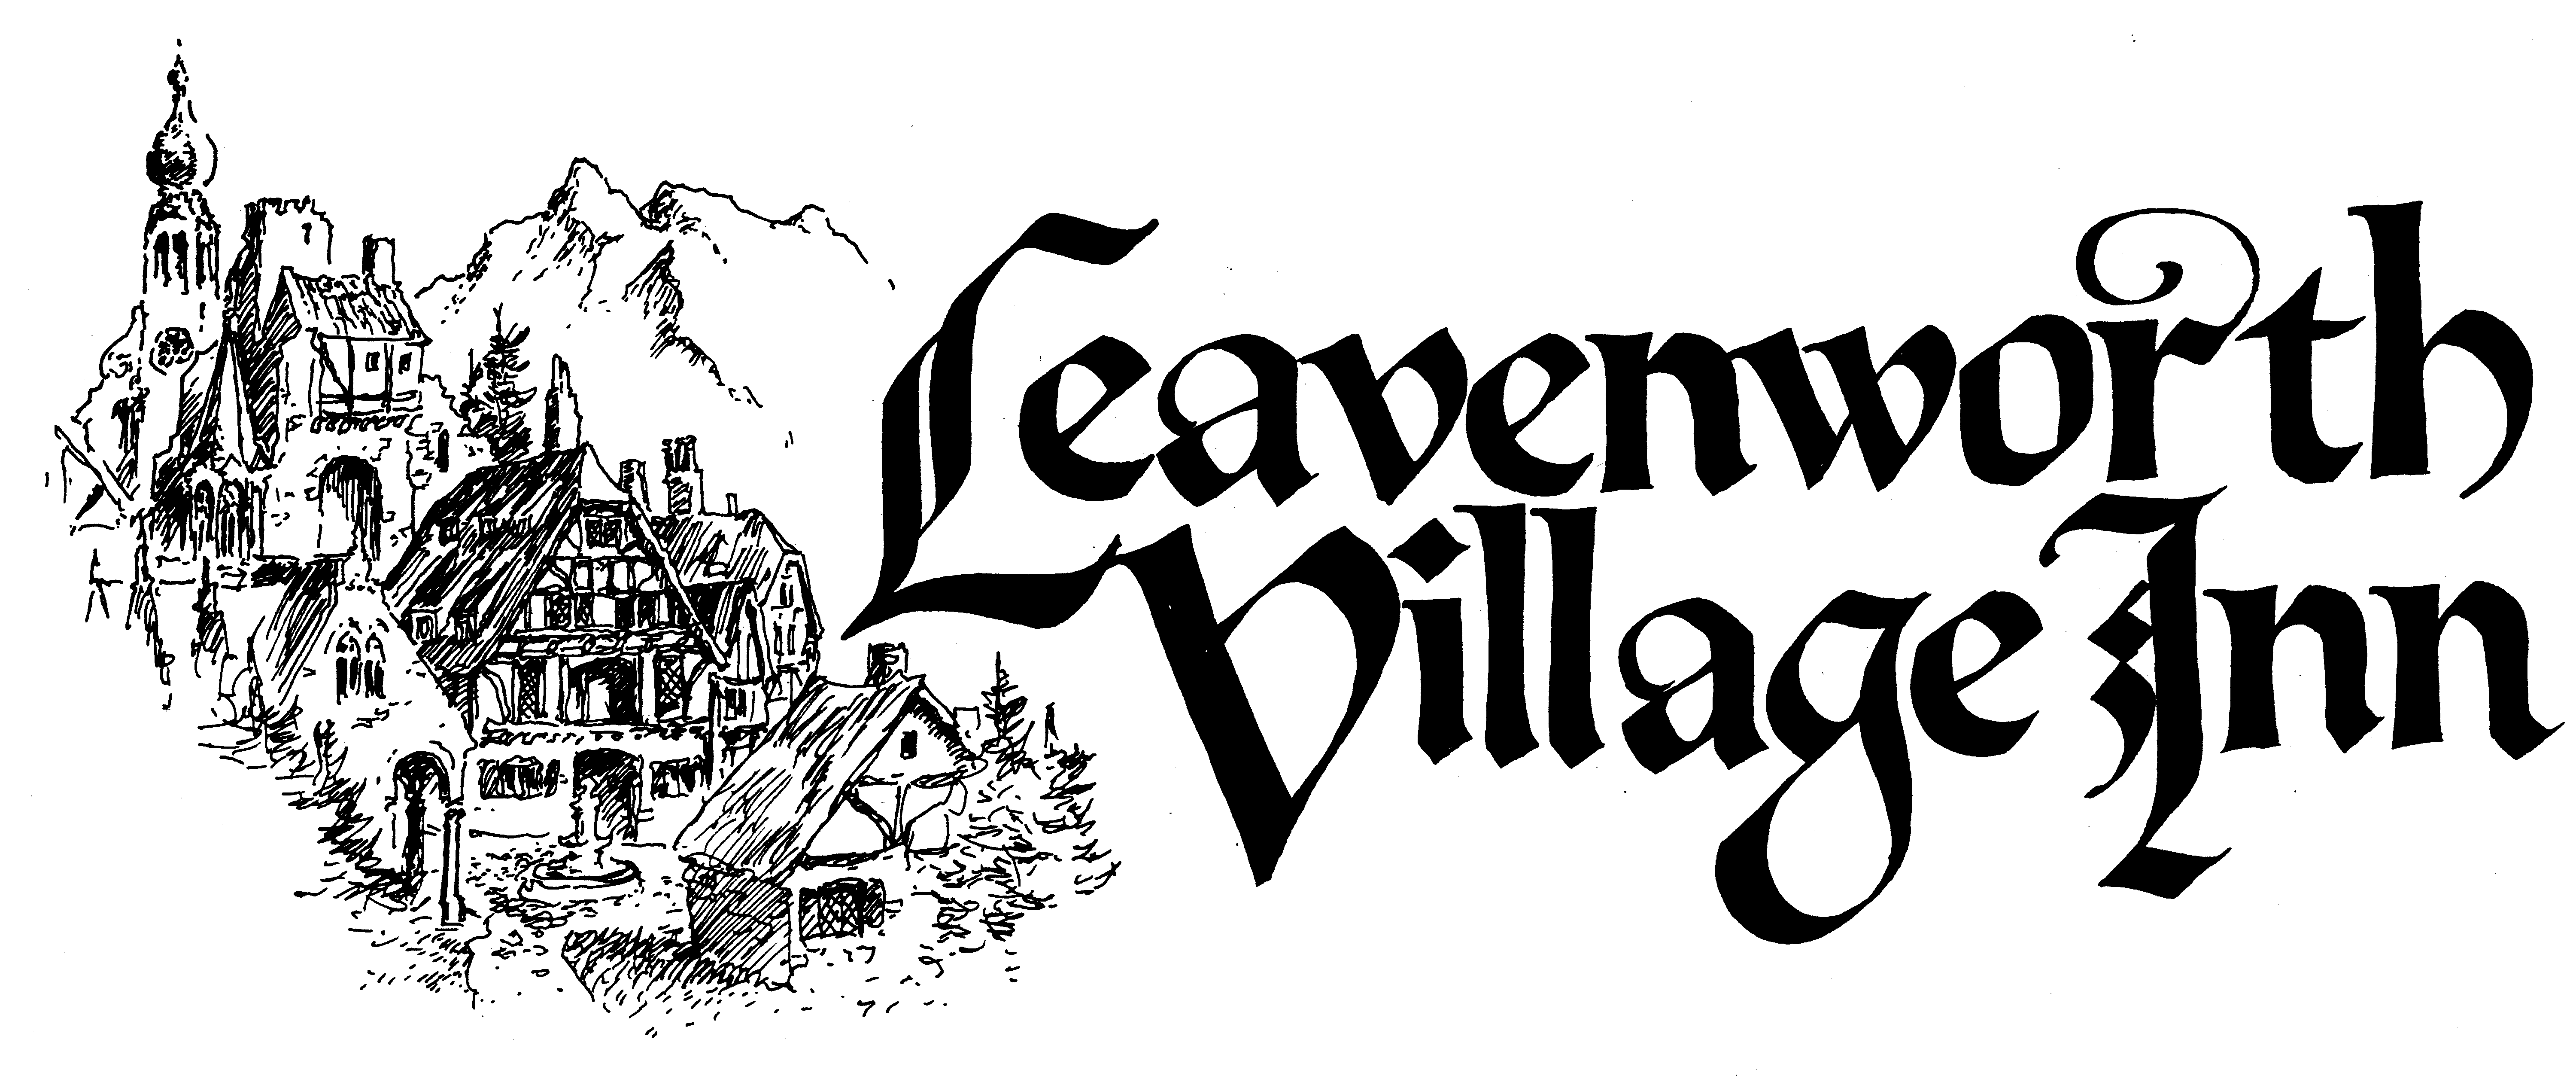 Leavenworth Village Inn